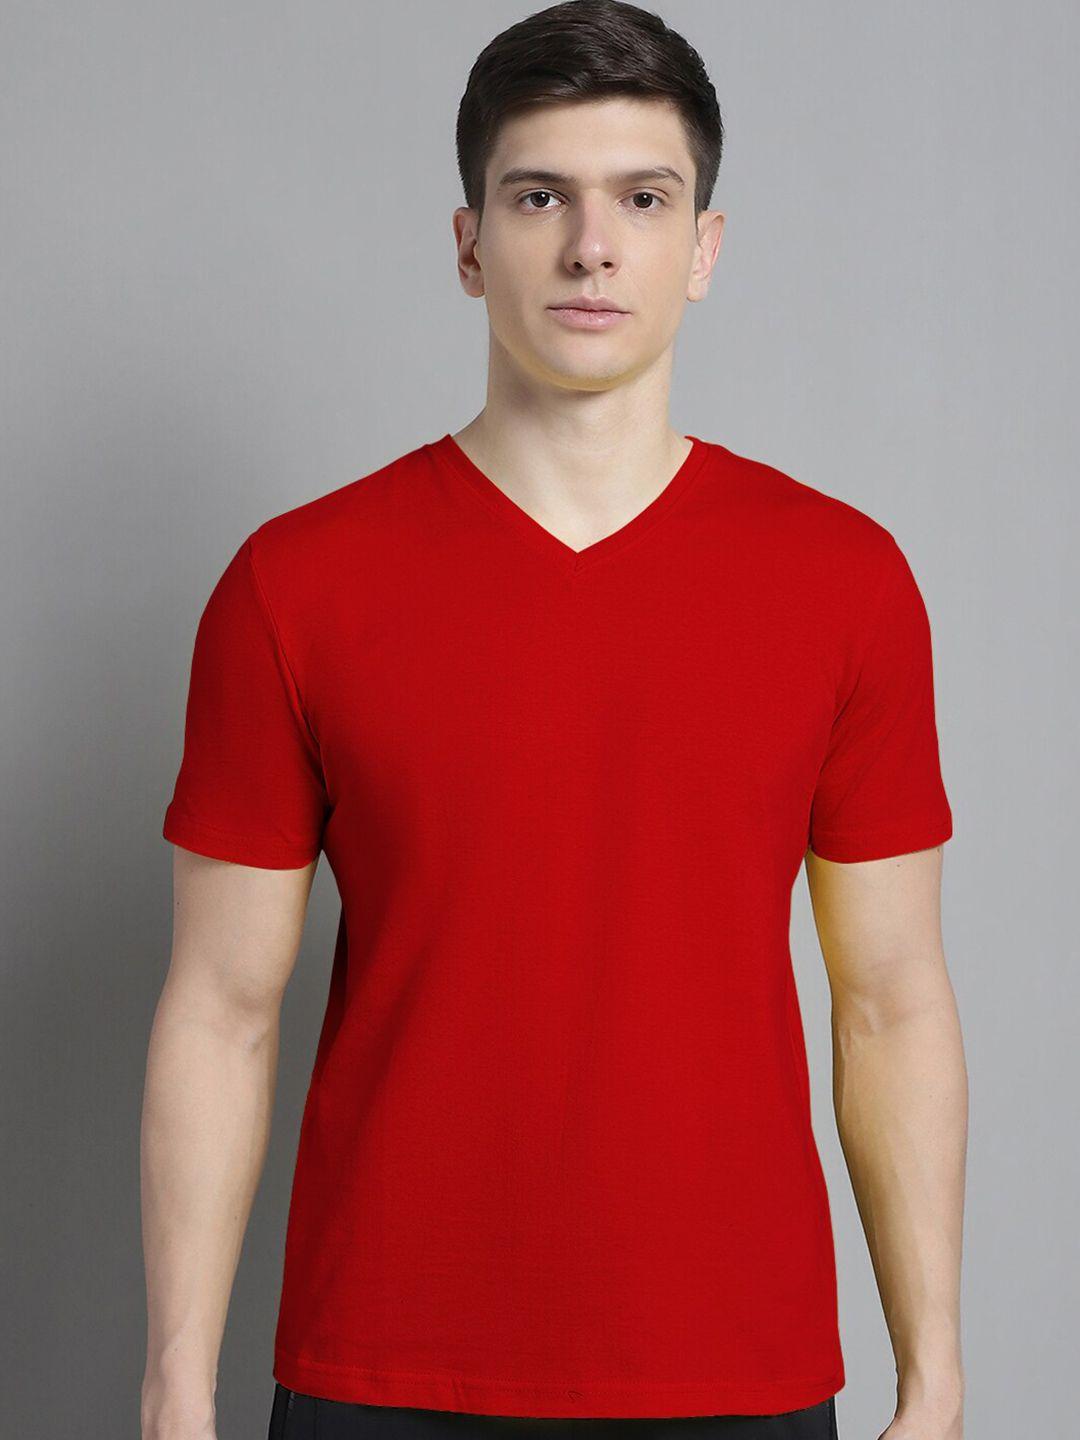 fbar v-neck slim fit pure cotton tshirt